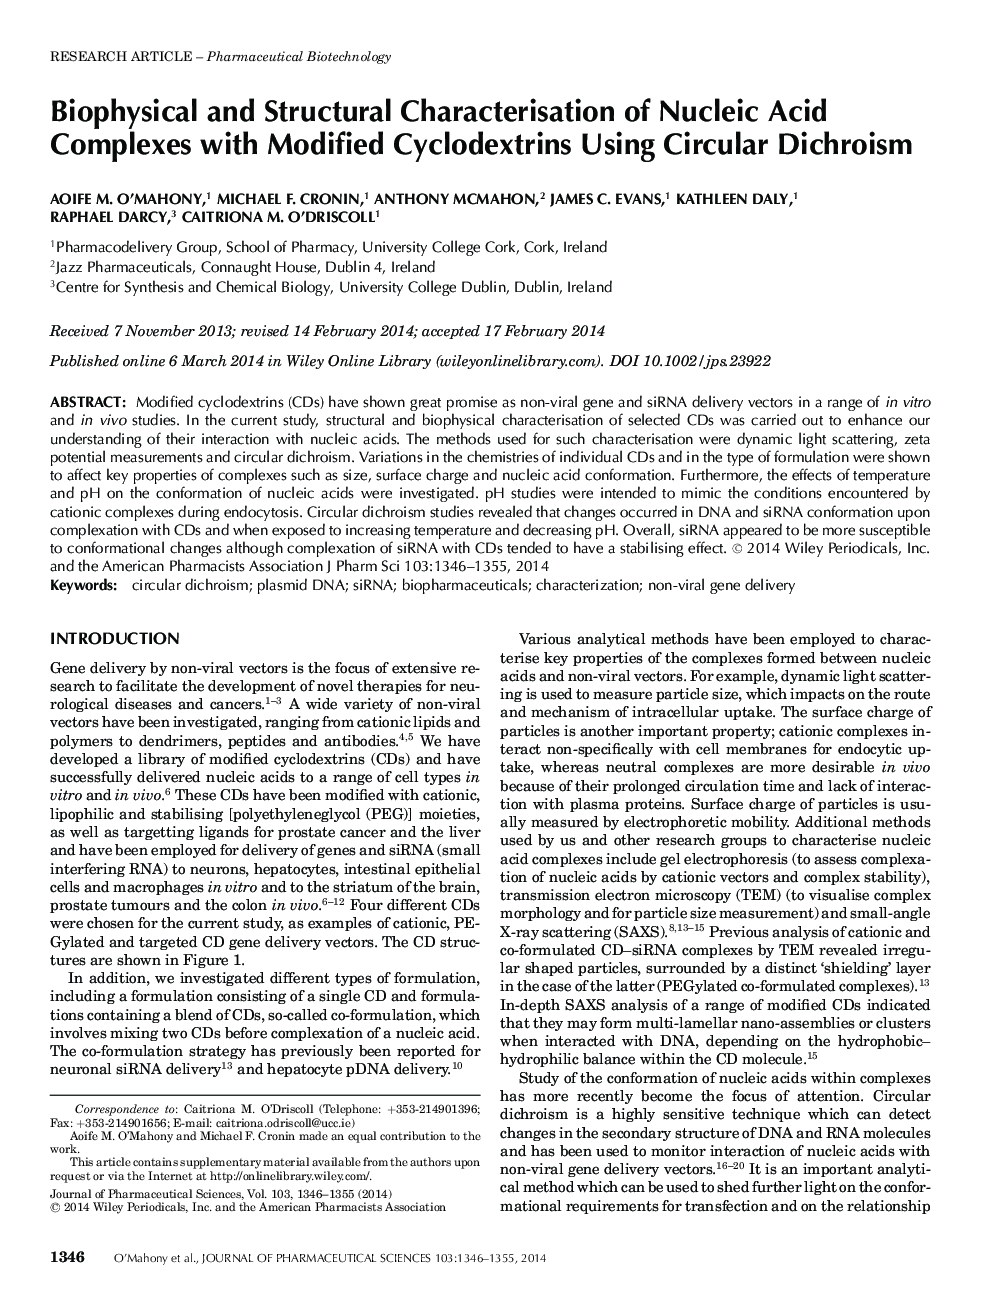 شناسایی بیوفیزیک و سازه های مجتمع های اسید نوکلئیک با سیکلوکودکسترین های اصلاح شده با استفاده از دی کروم 